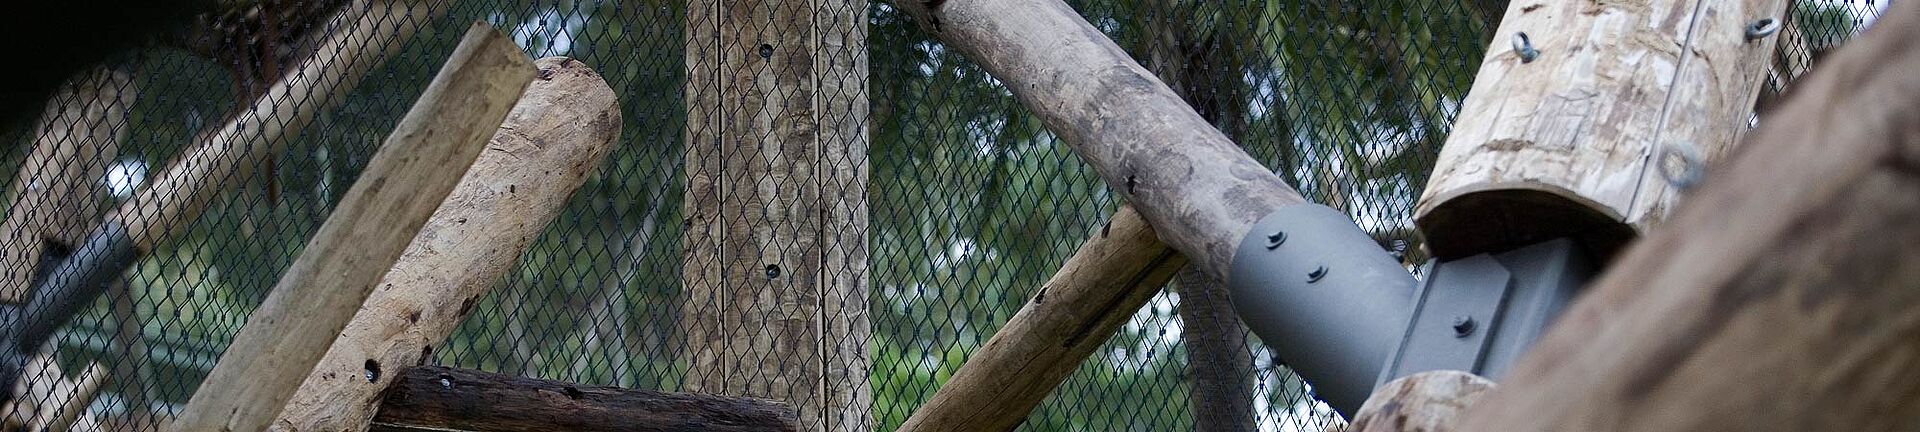 Taronga Zoo Gehege für Schimpansen